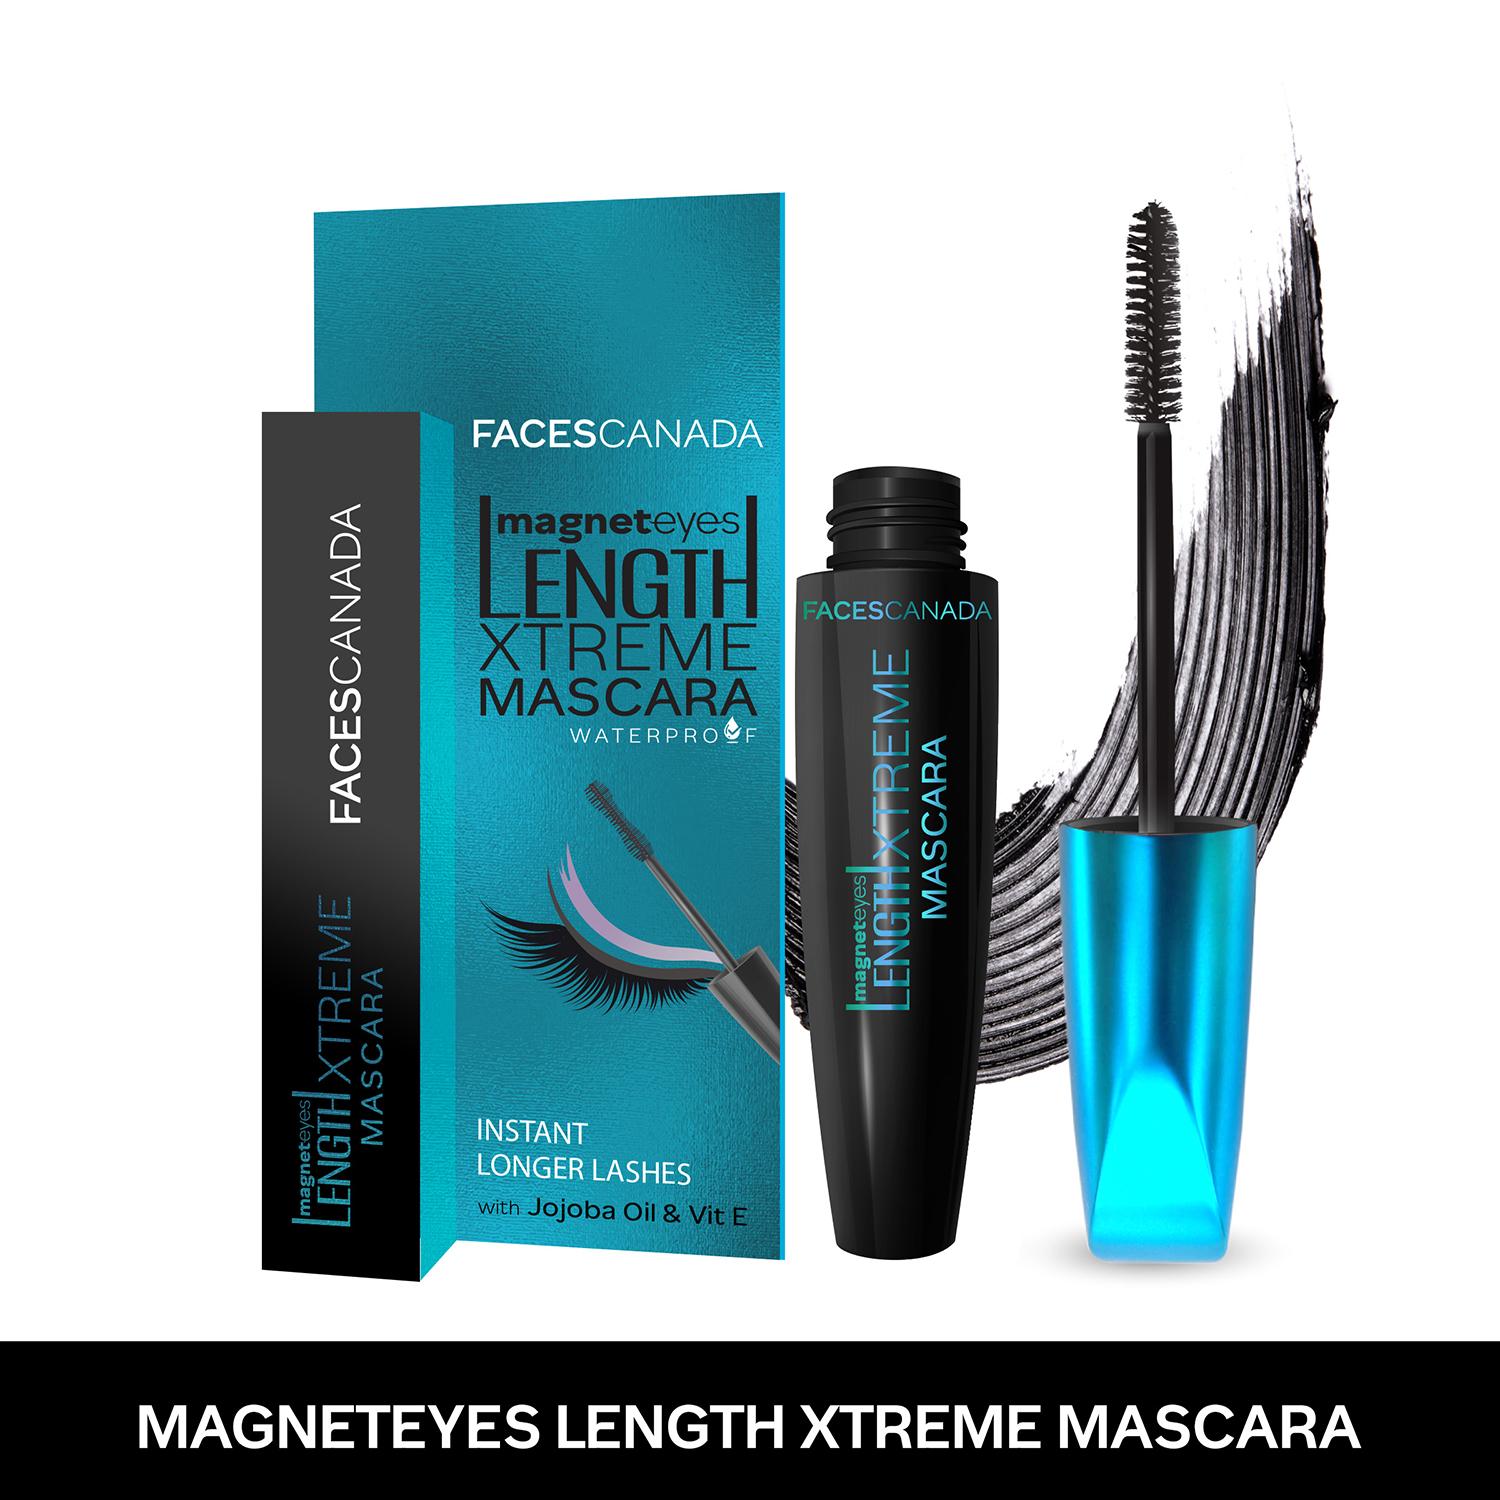 Faces Canada Magneteyes Length Xtreme Mascara,Volumizes Lashes, Waterproof, Long Wear - Black (8 g)